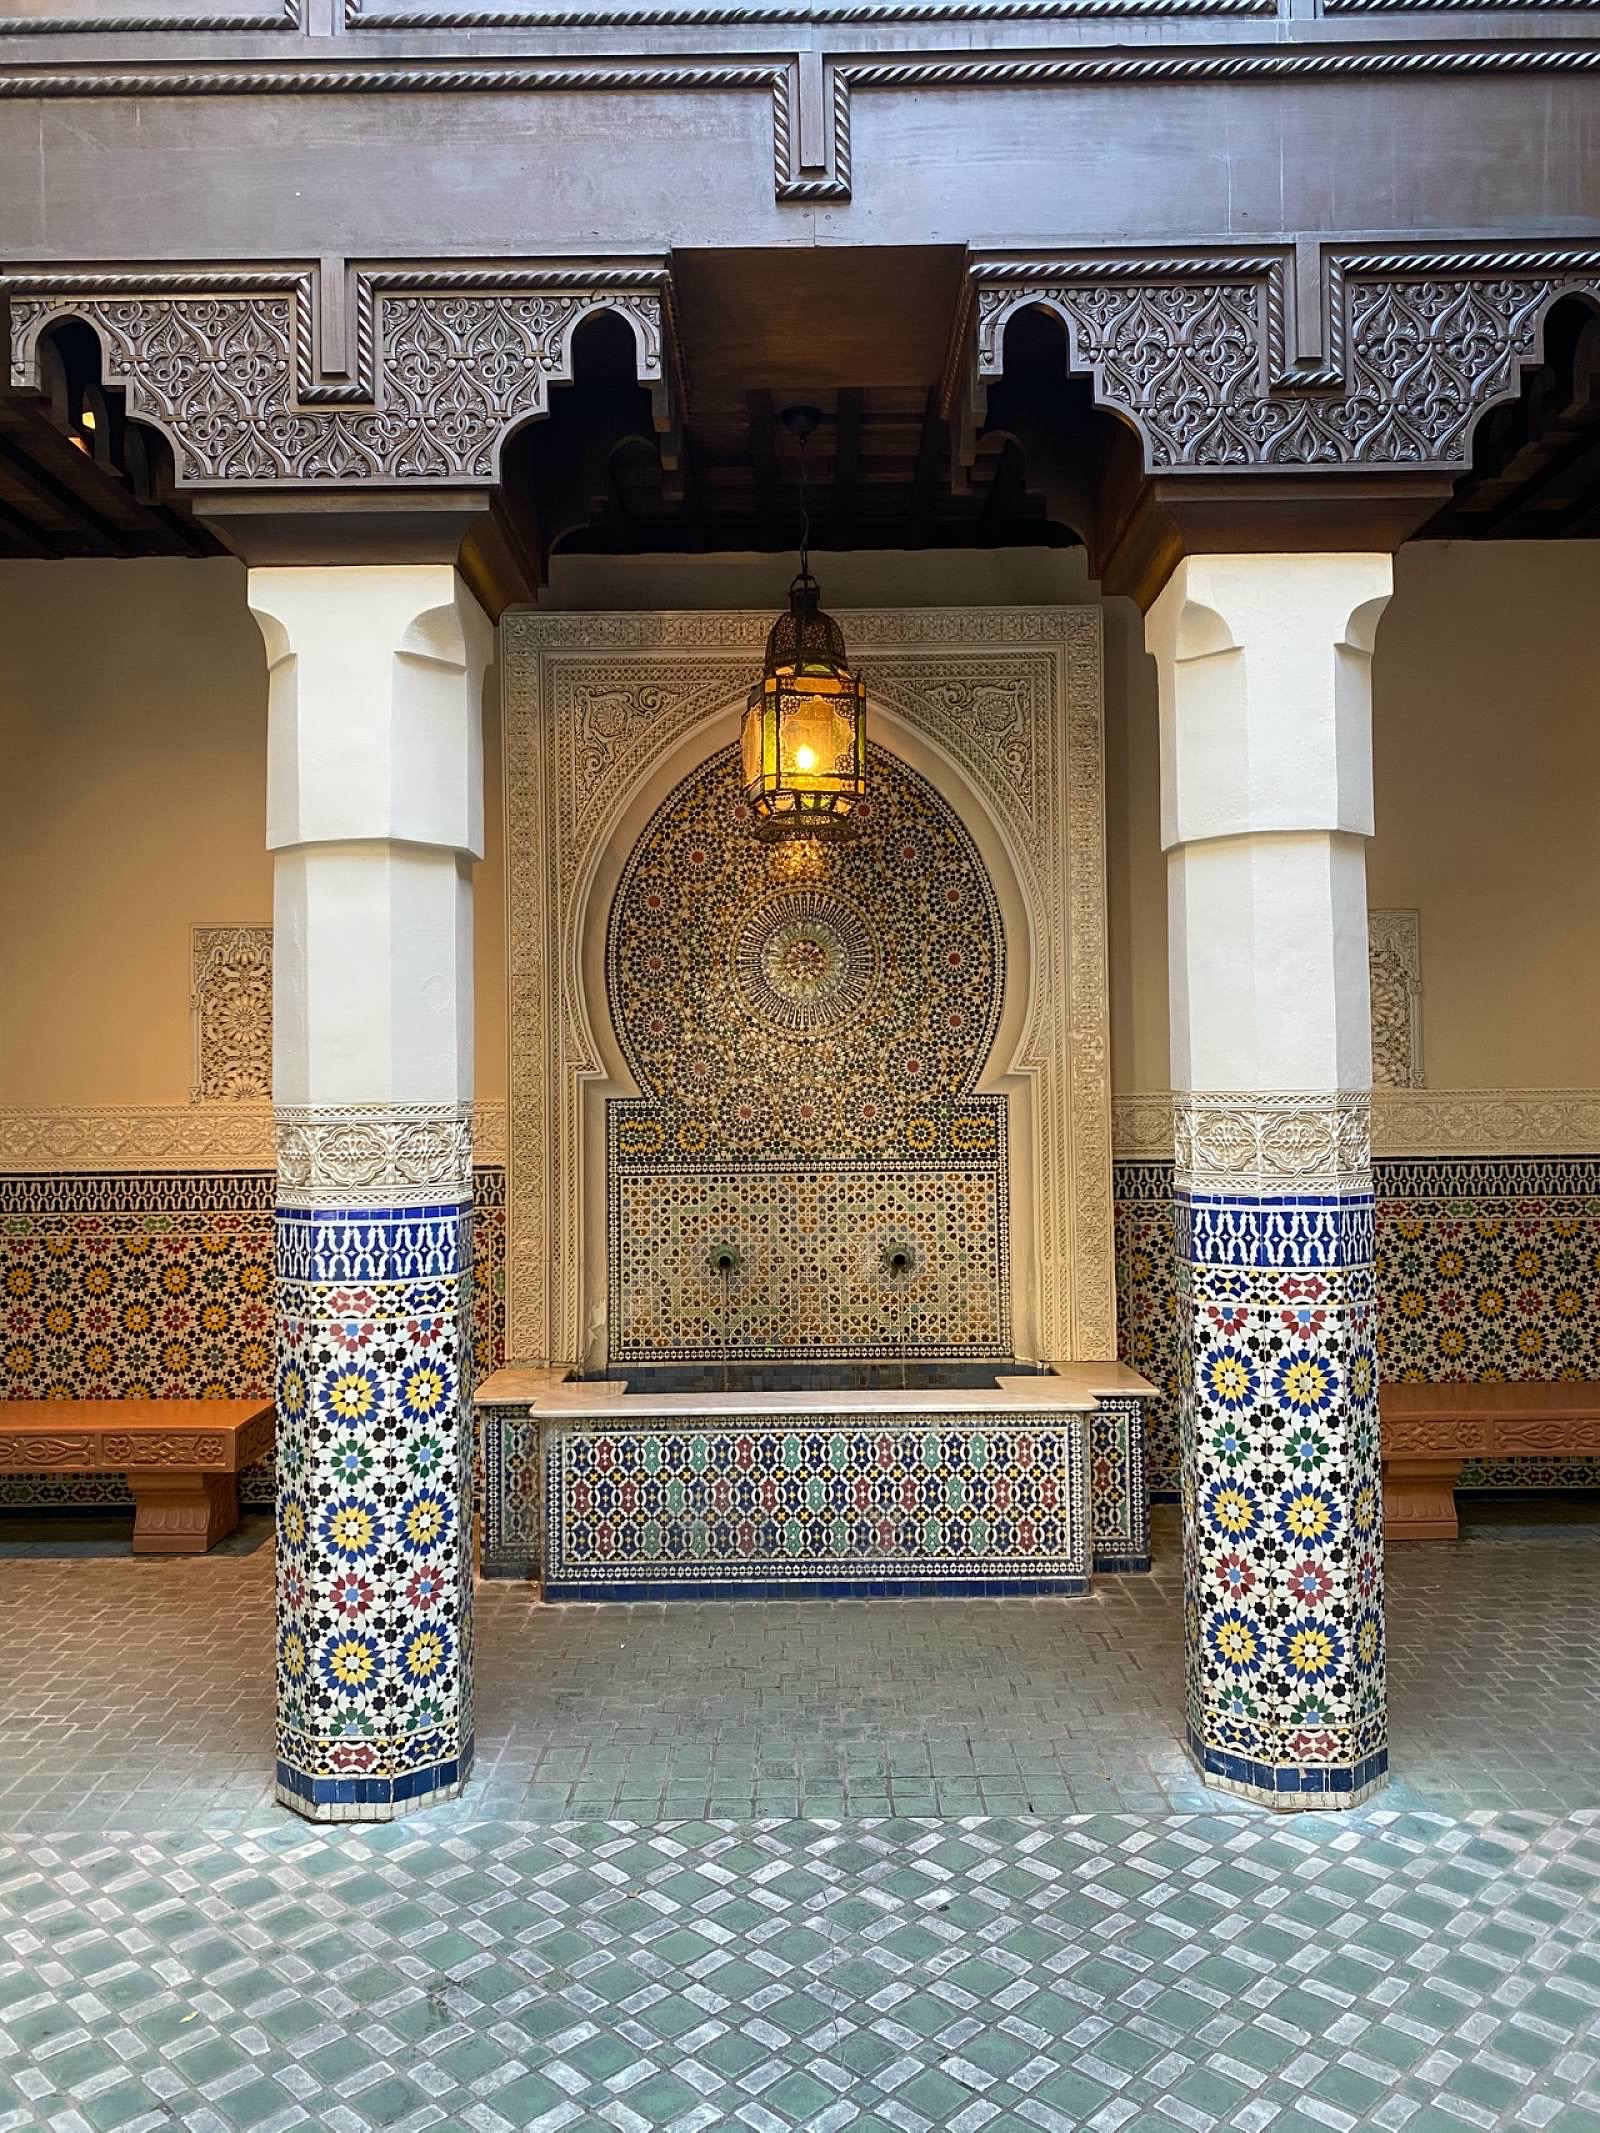 Epcot's Morocco Pavilion